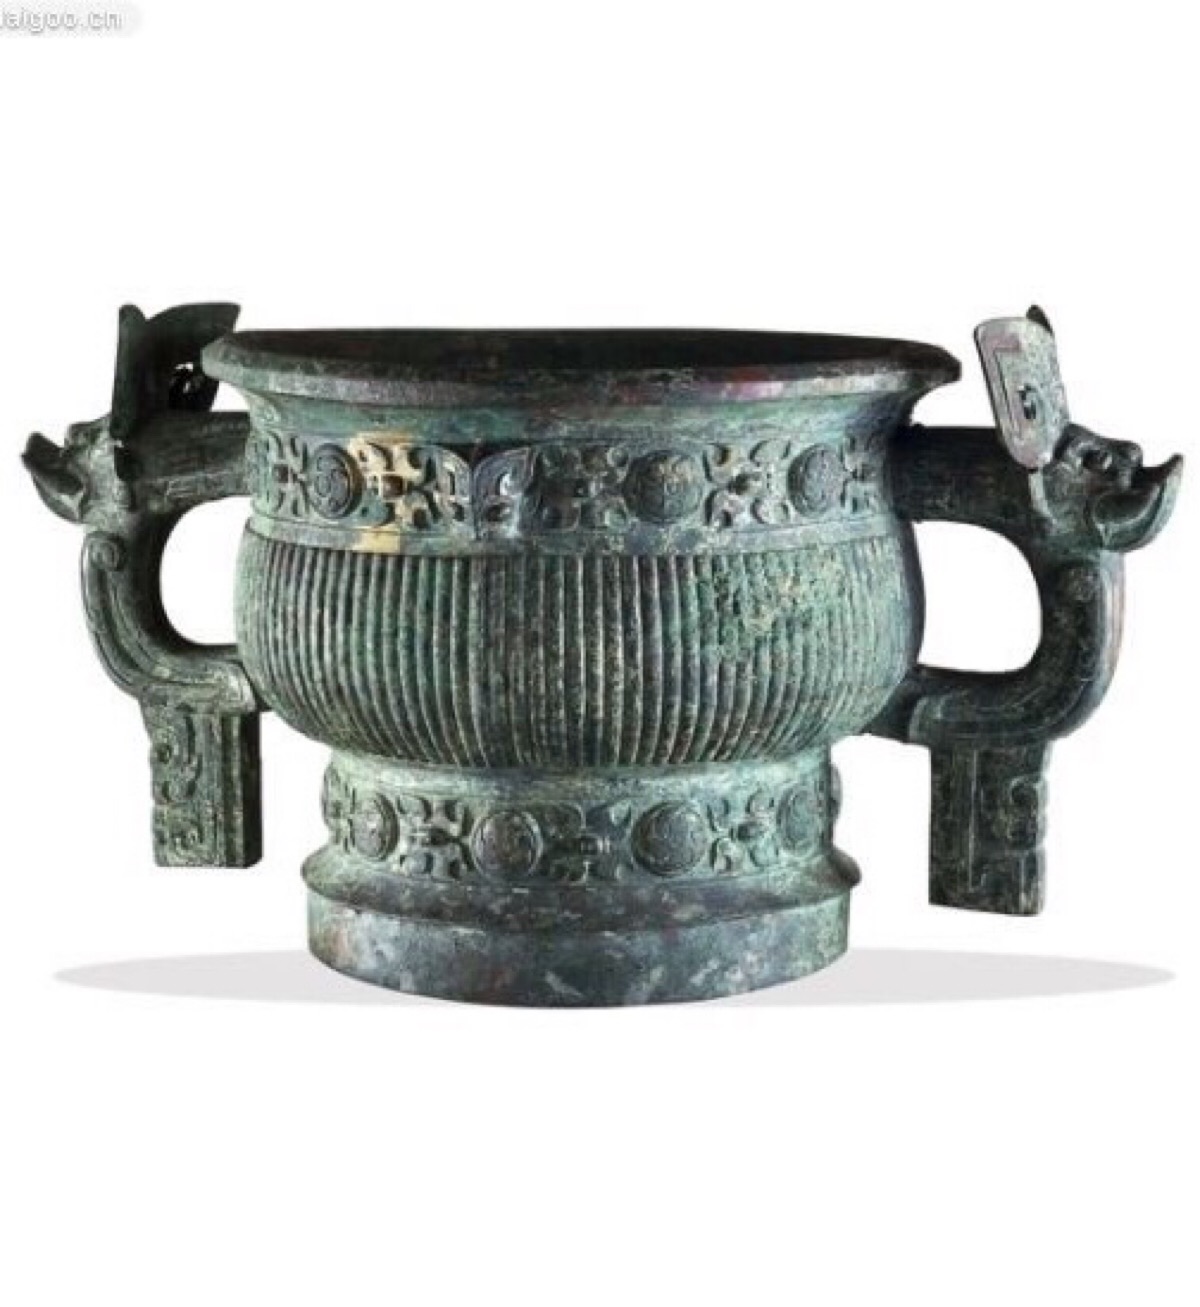 大英博物馆收藏的中国文物中国周朝仪式器具(簋),来自中国,西周早期